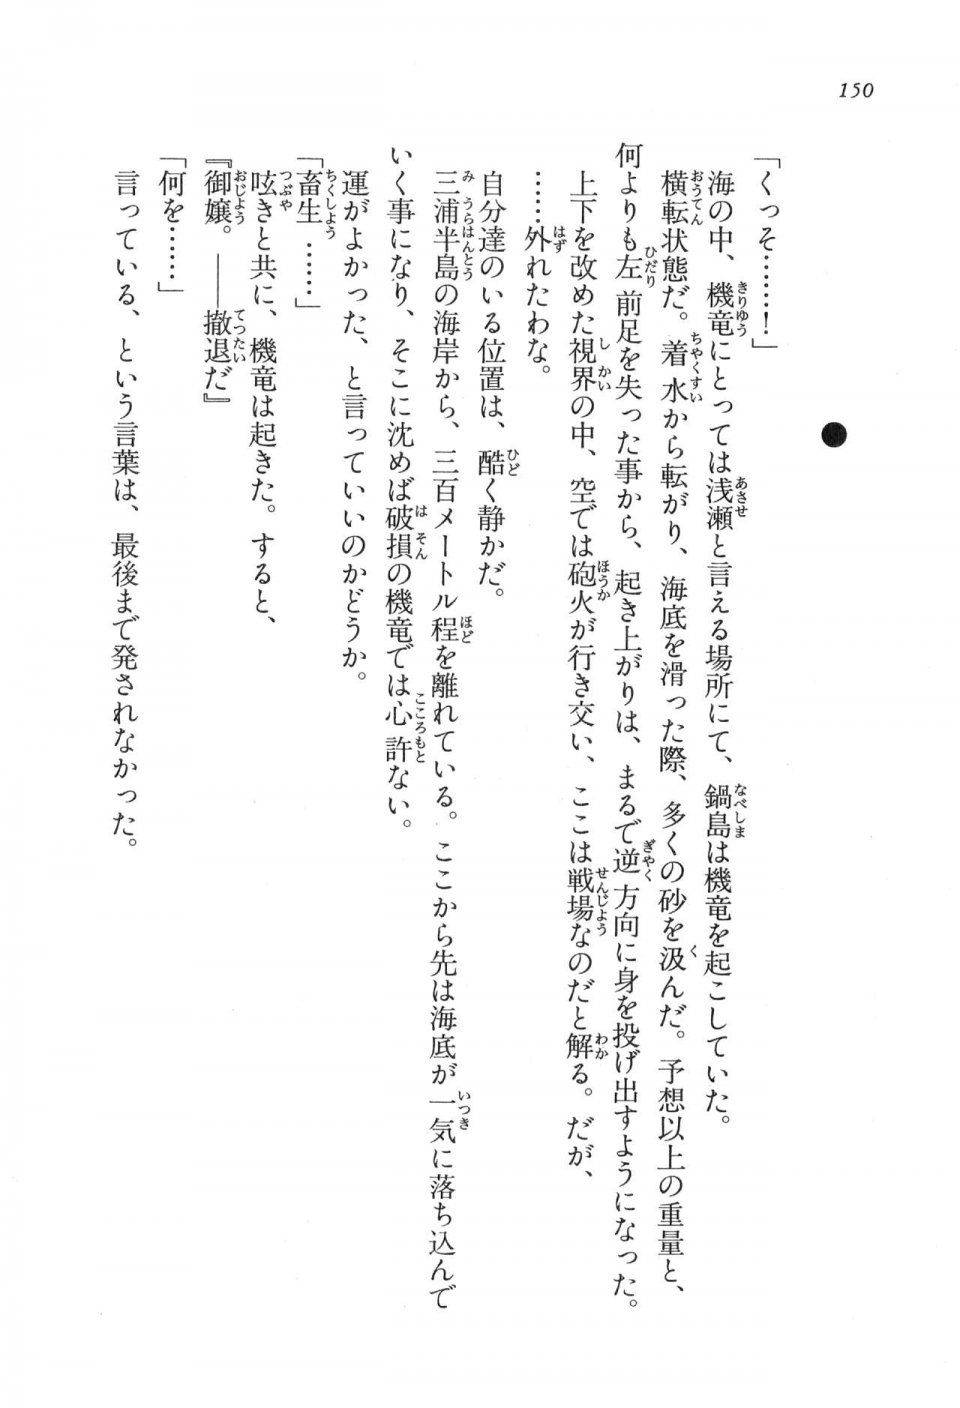 Kyoukai Senjou no Horizon LN Vol 17(7B) - Photo #150